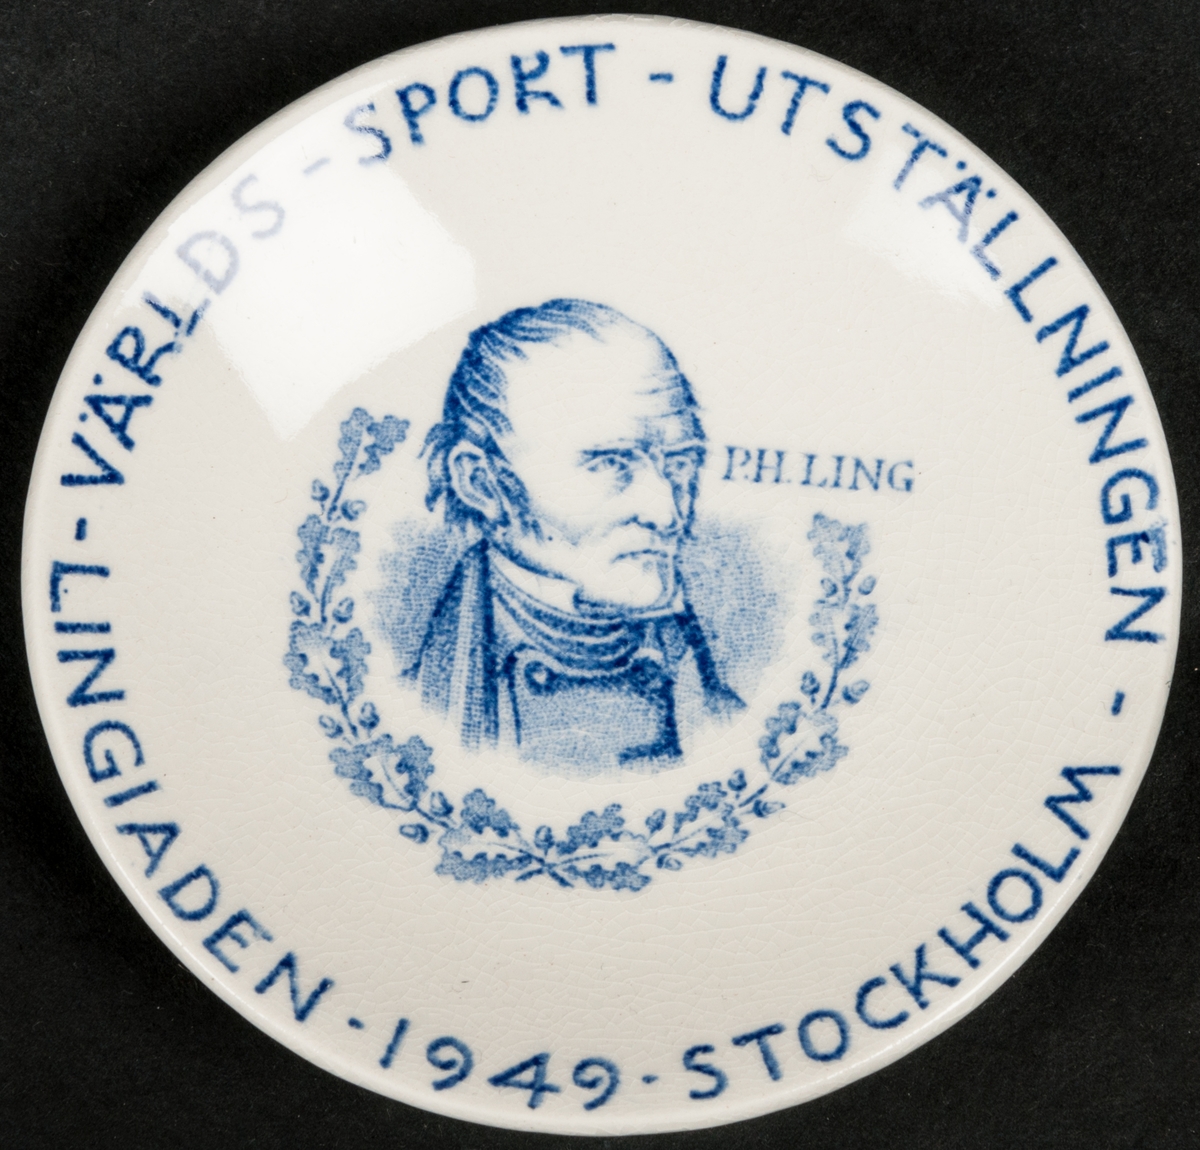 Askfat av keramik. Världssportutställningen Lingiaden 1949 Stockholm.
Avbildad man i Empireklädsel: P.H. Ling.